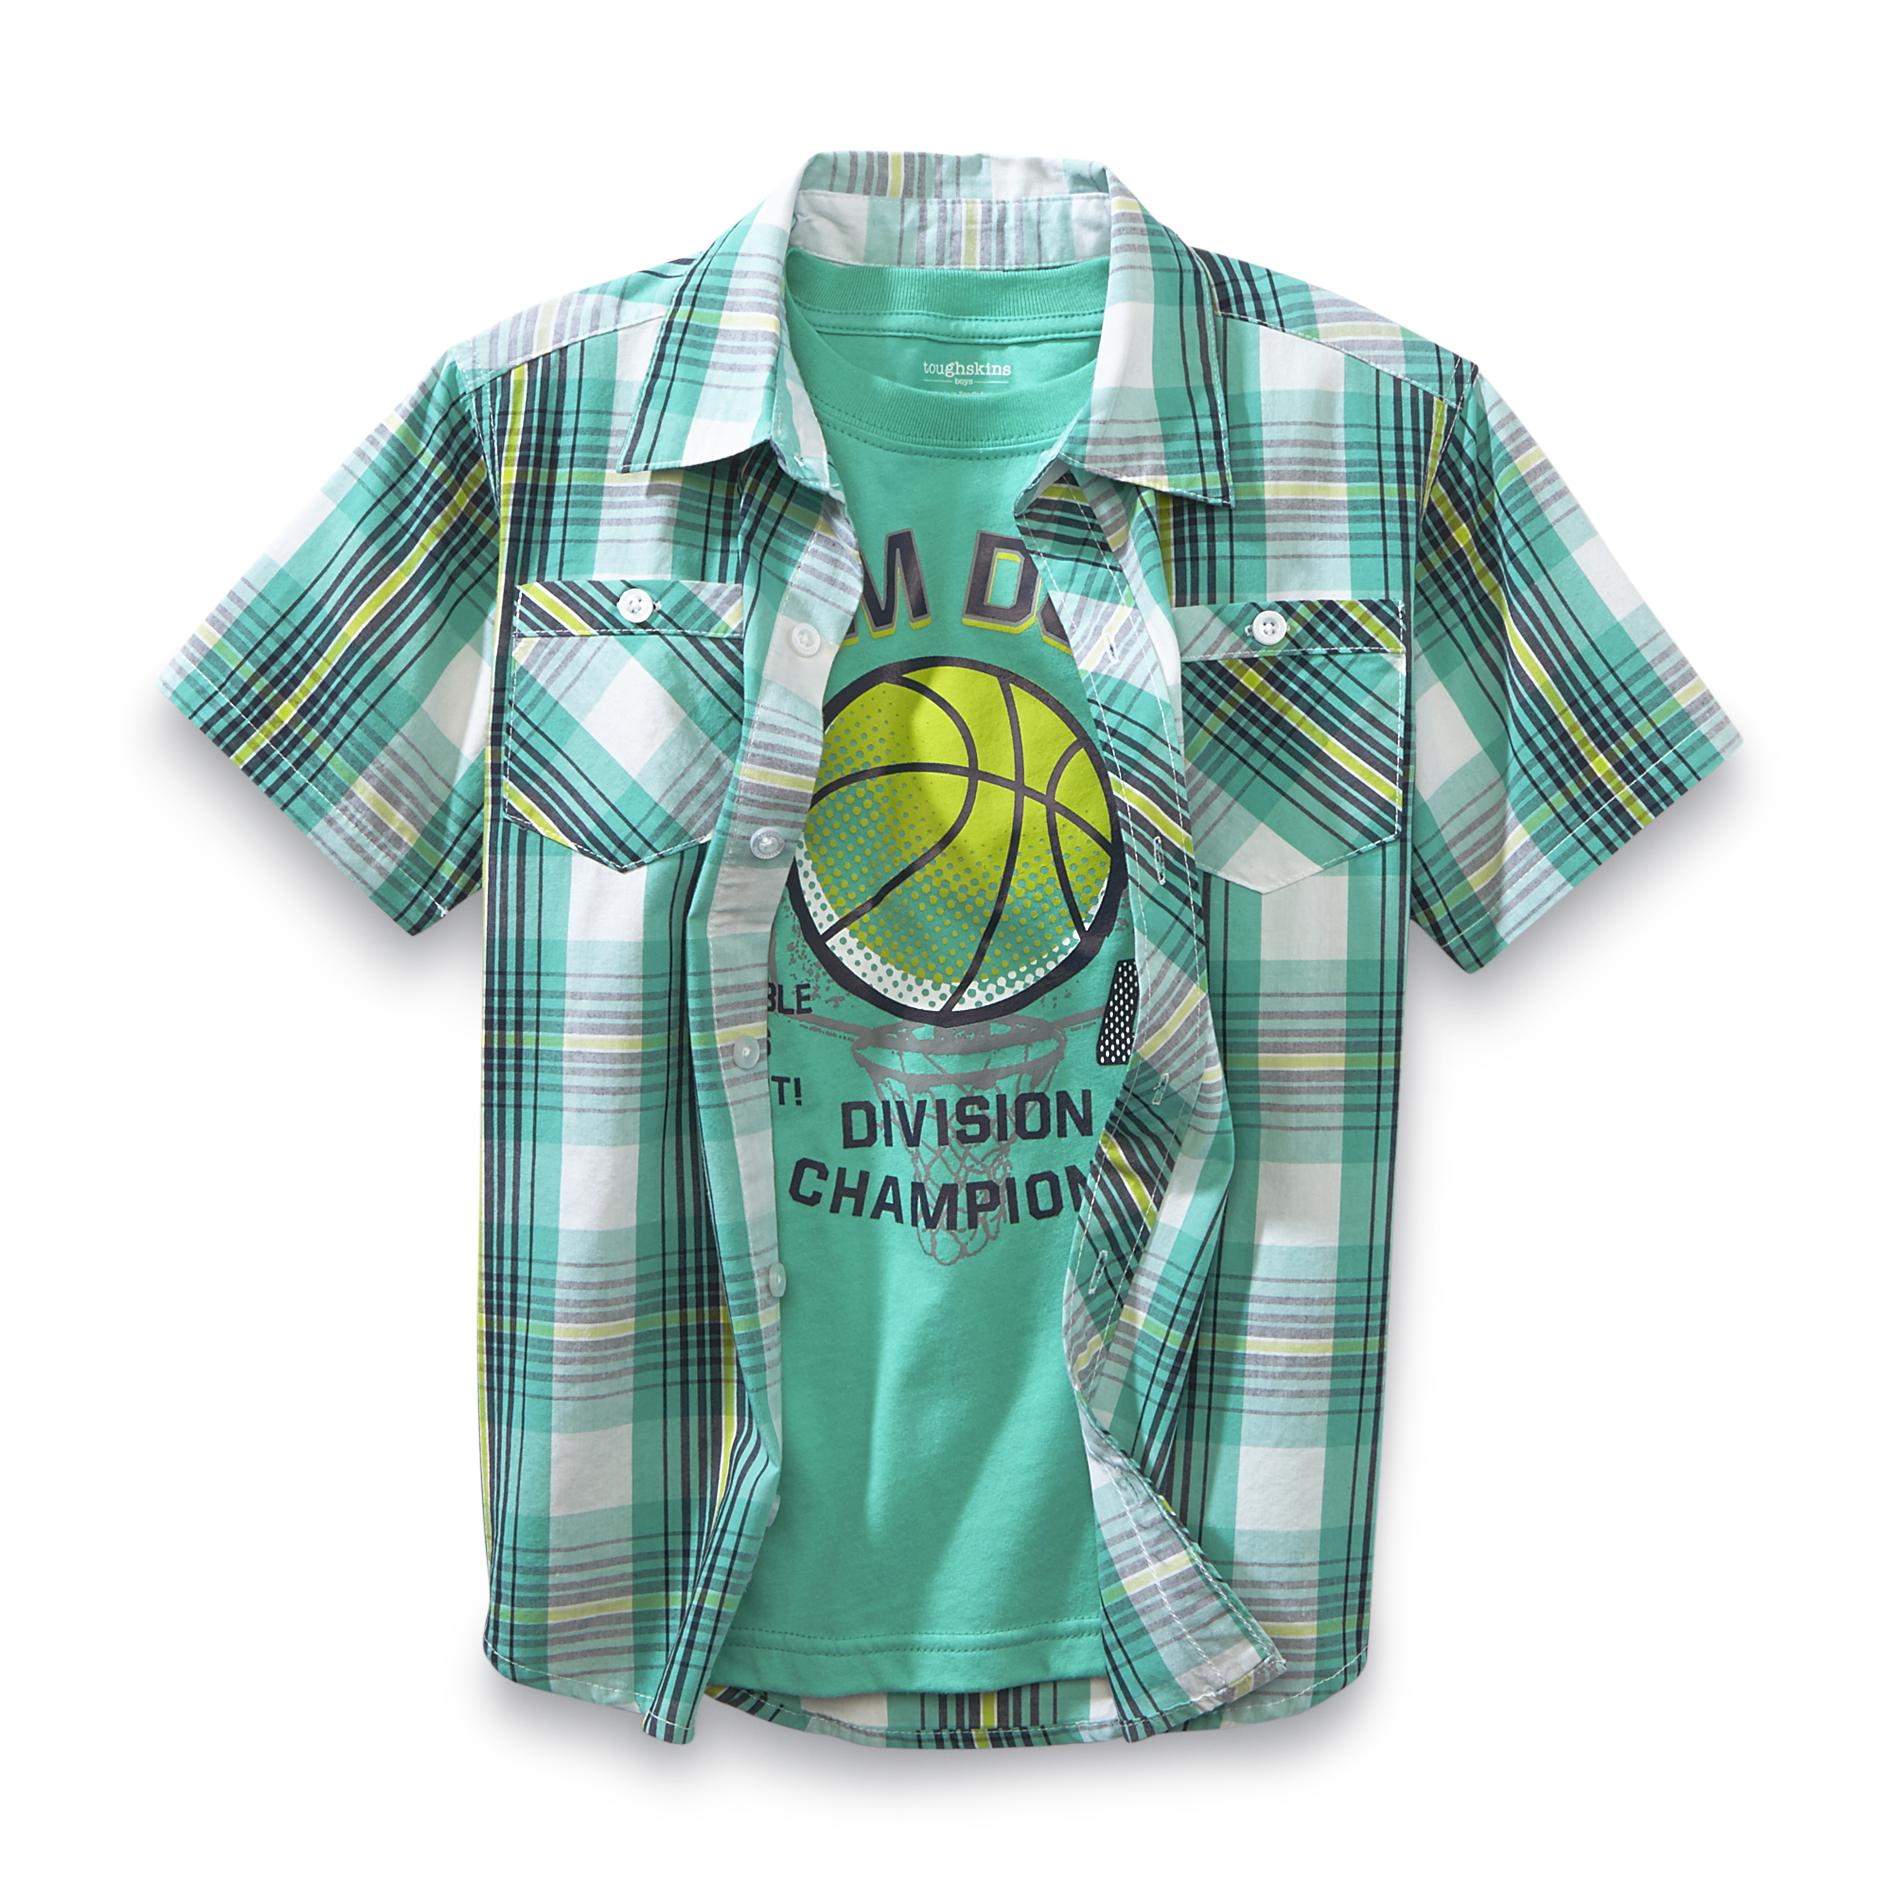 Toughskins Boy's Graphic T-Shirt & Button-Front Shirt - Slam Dunk